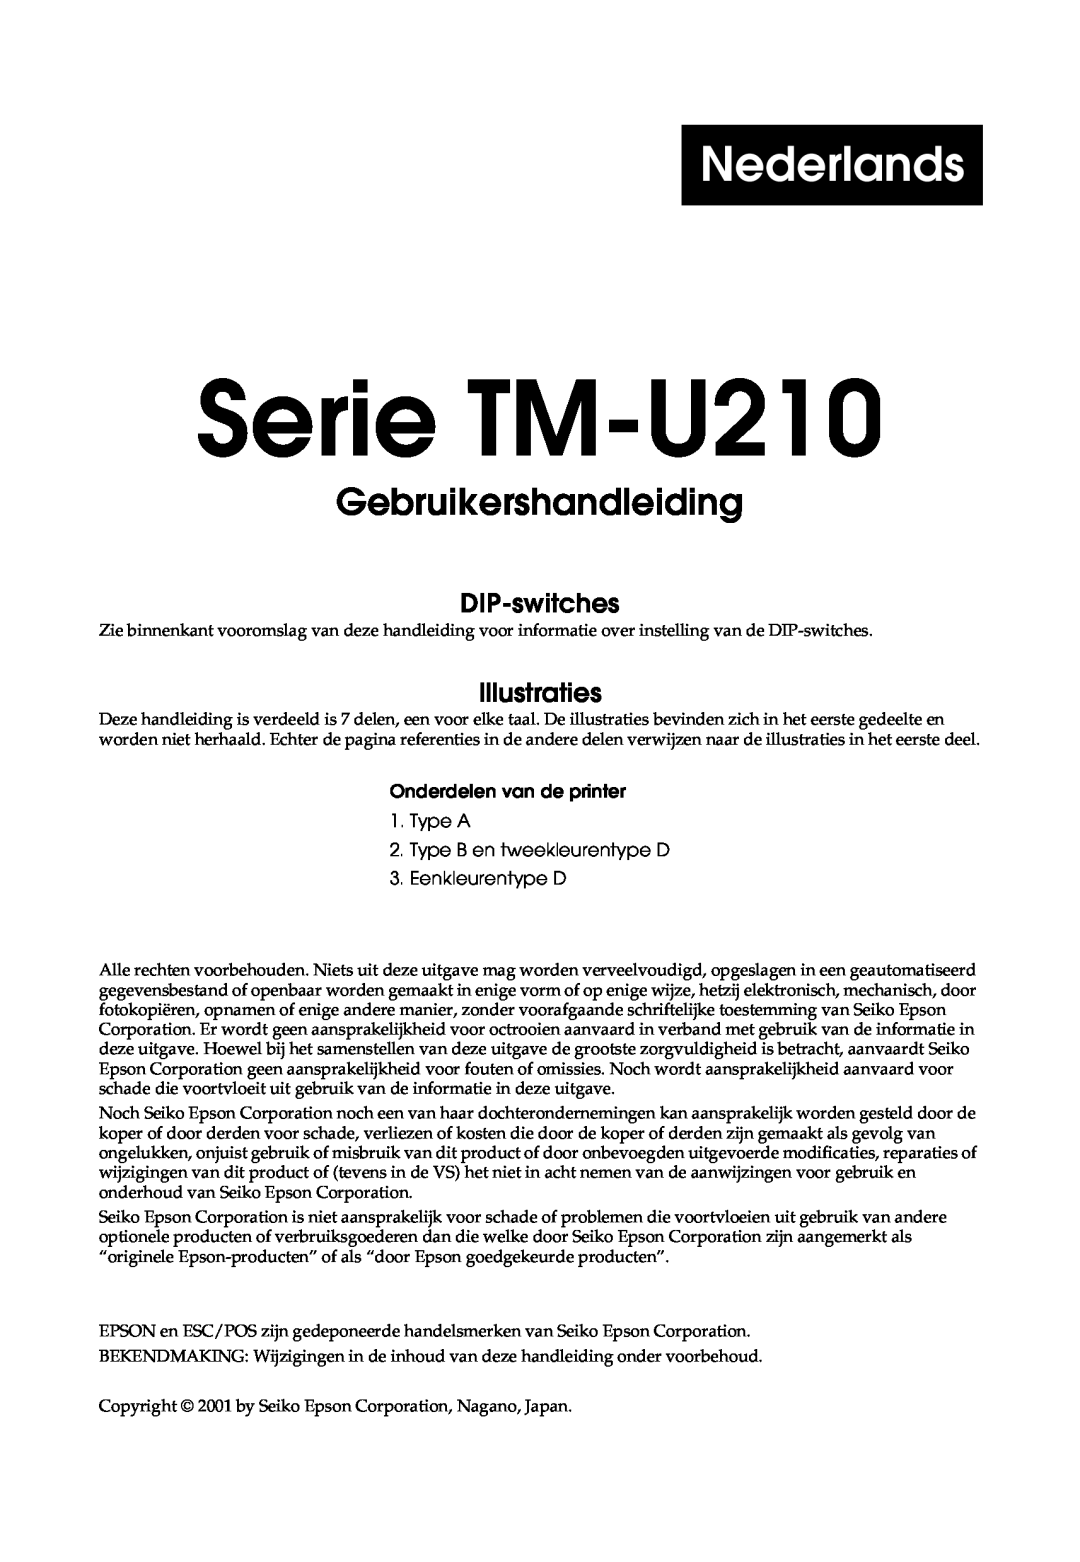 Epson TM-U210B, M119B, M119D, M119A Nederlands, Gebruikershandleiding voor de Serie TM-U210, DIP-switches, Illustraties 